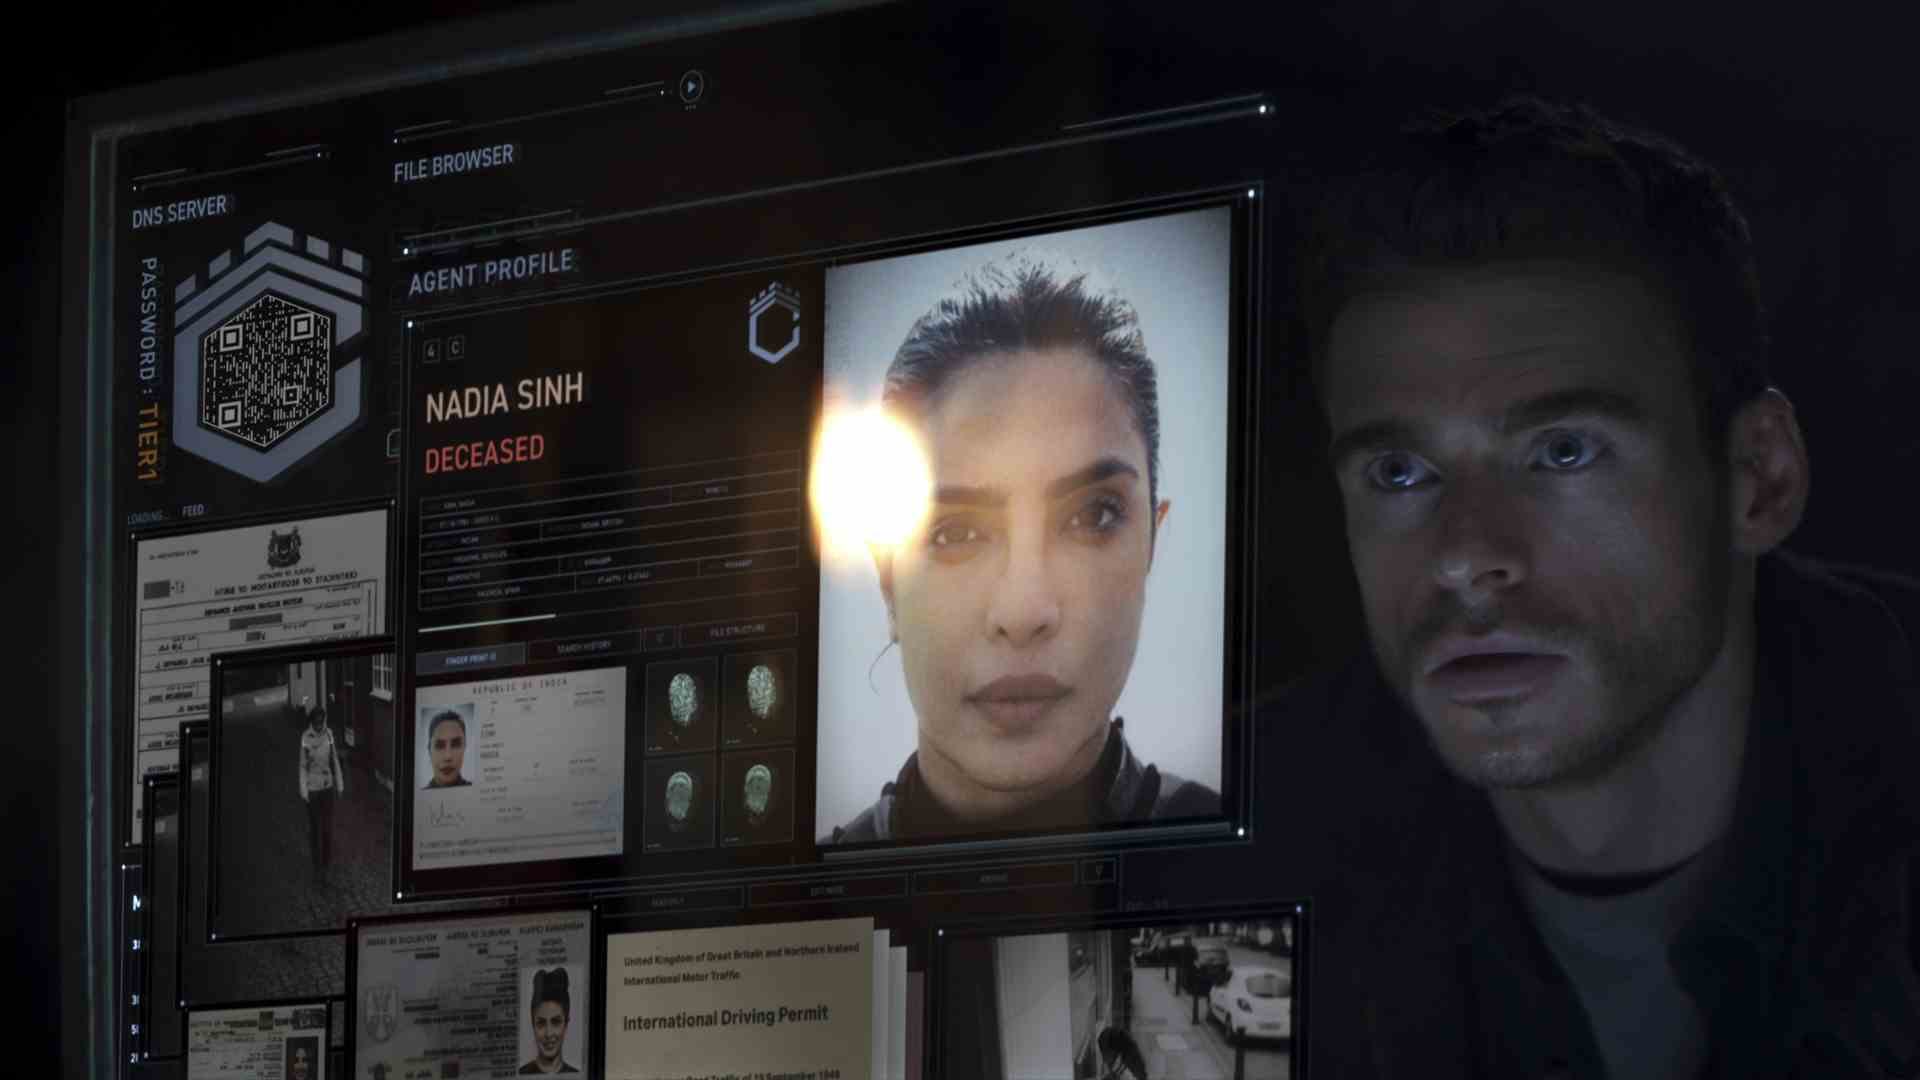 Mason, Prime Video'da Nadia'nın Citadel'deki dosyasını gösteren bir bilgisayar ekranına bakıyor